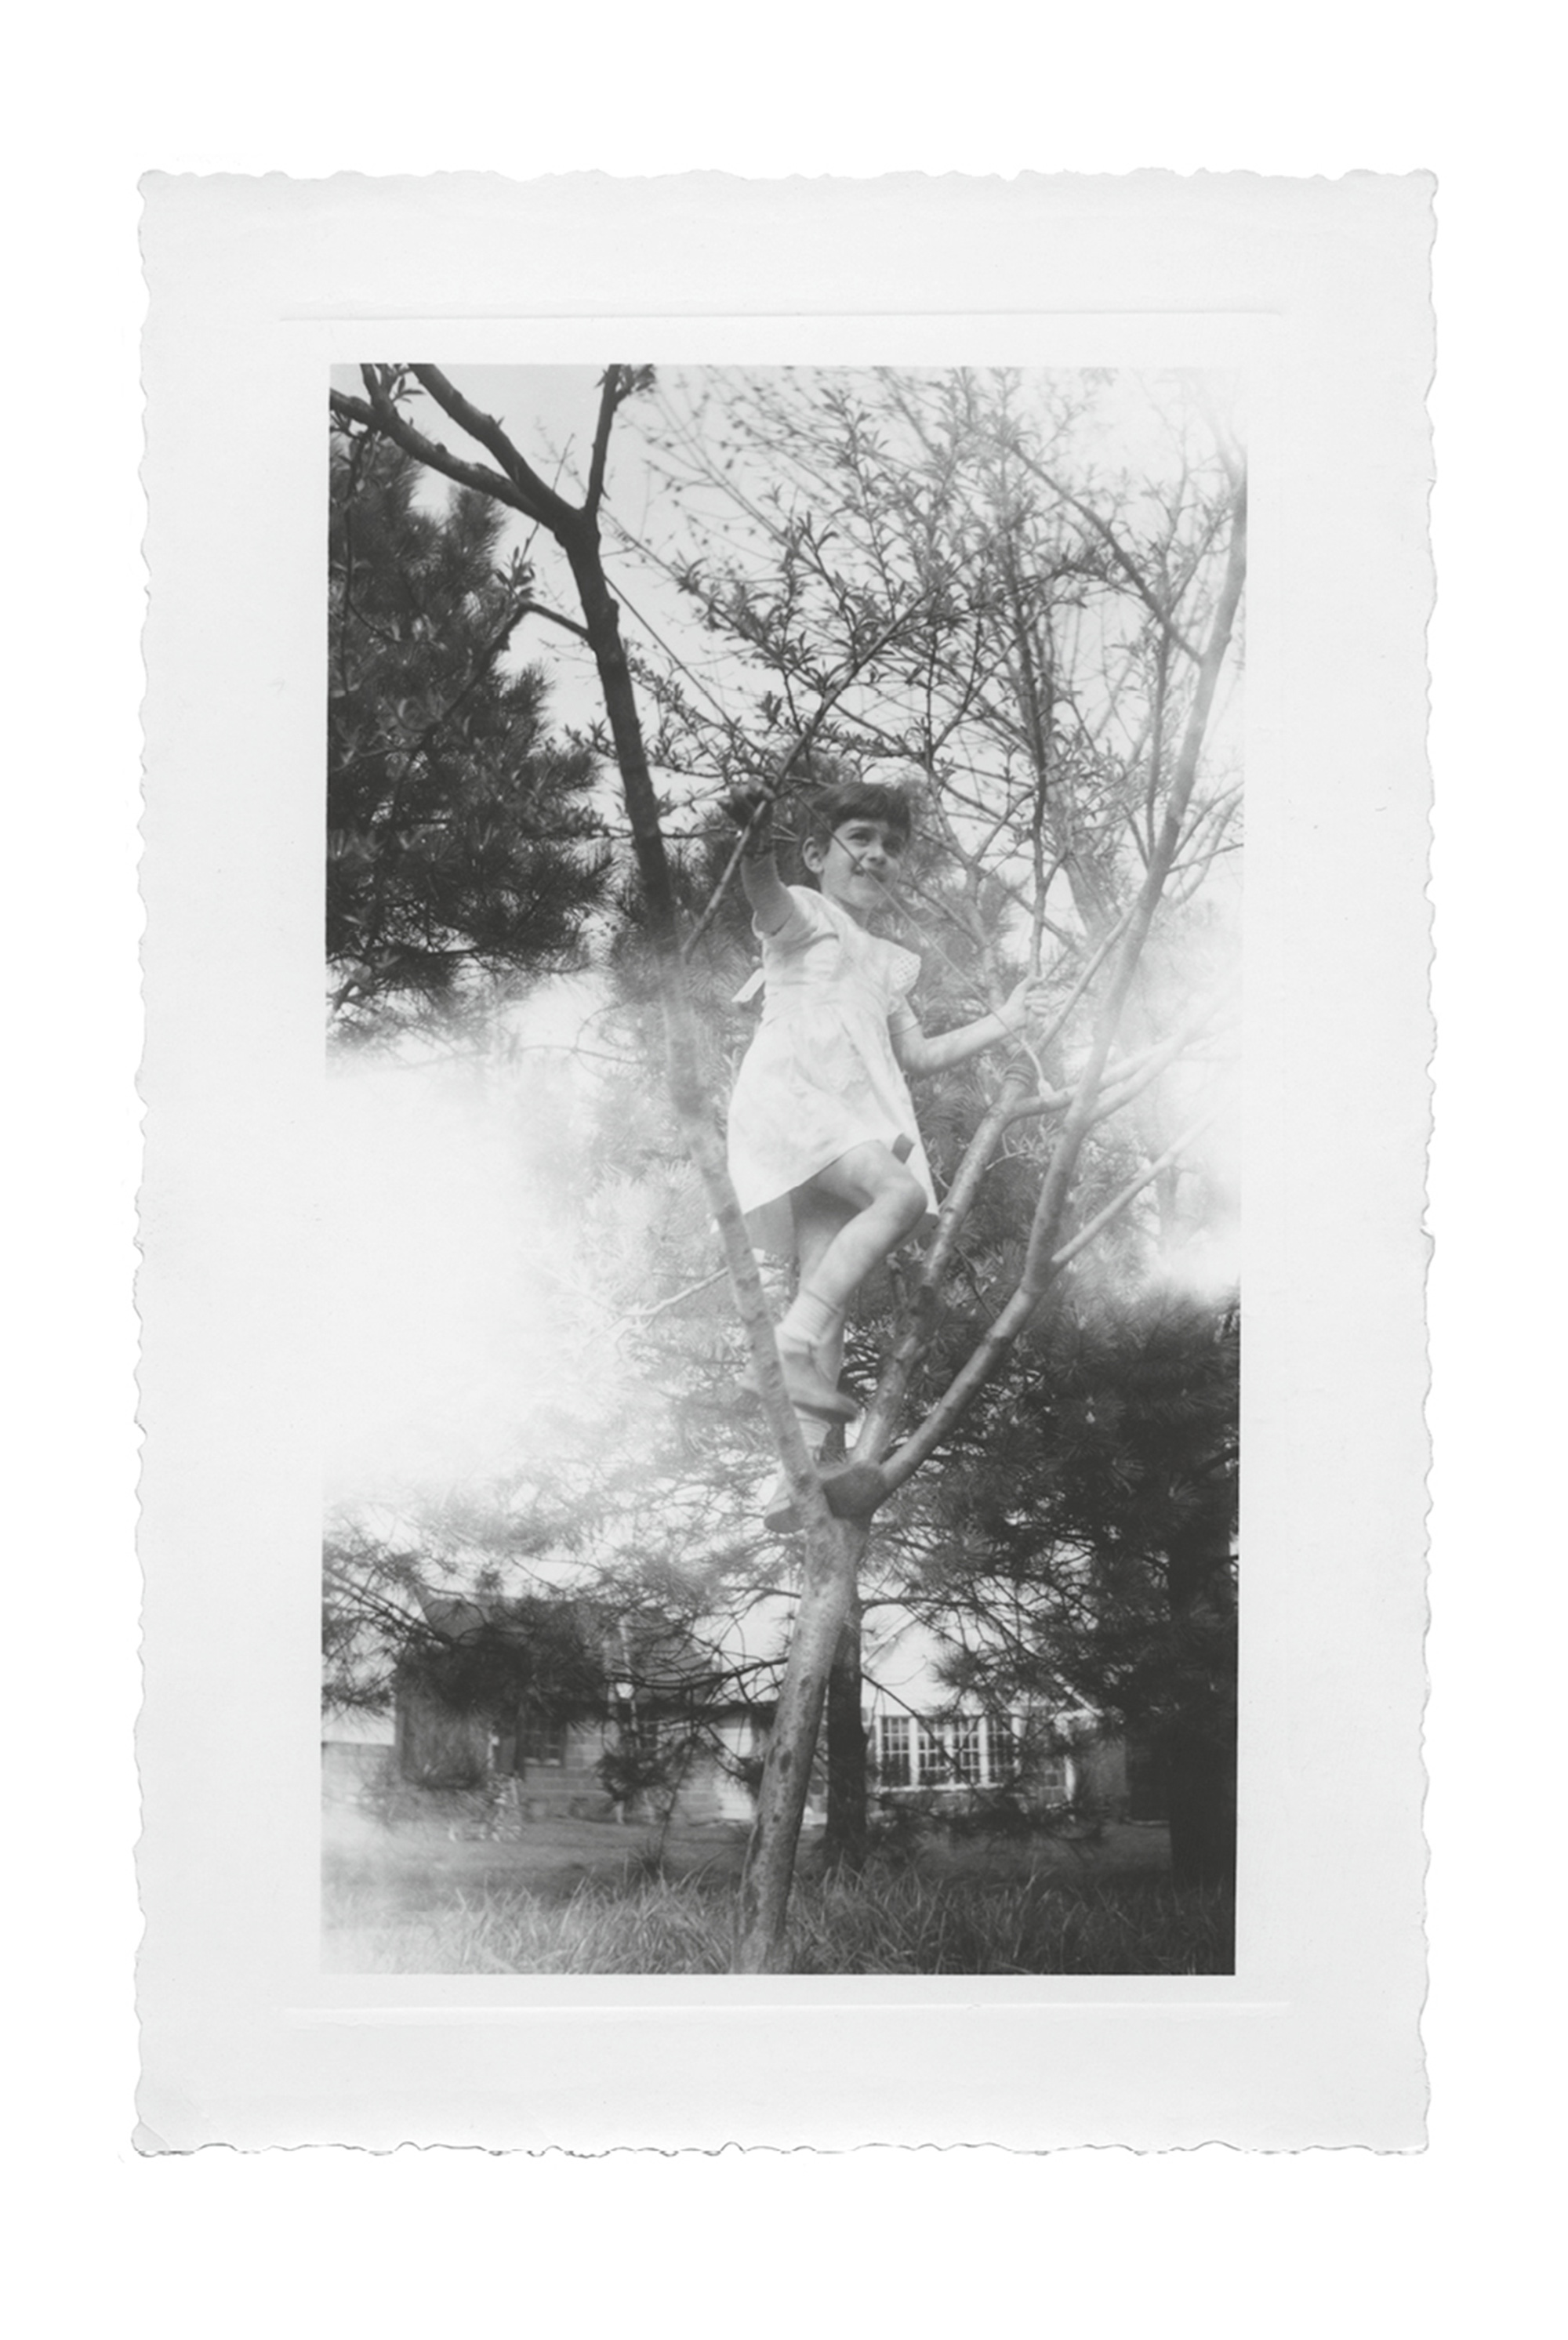 A photograph of a young girl climbing a sapling. 